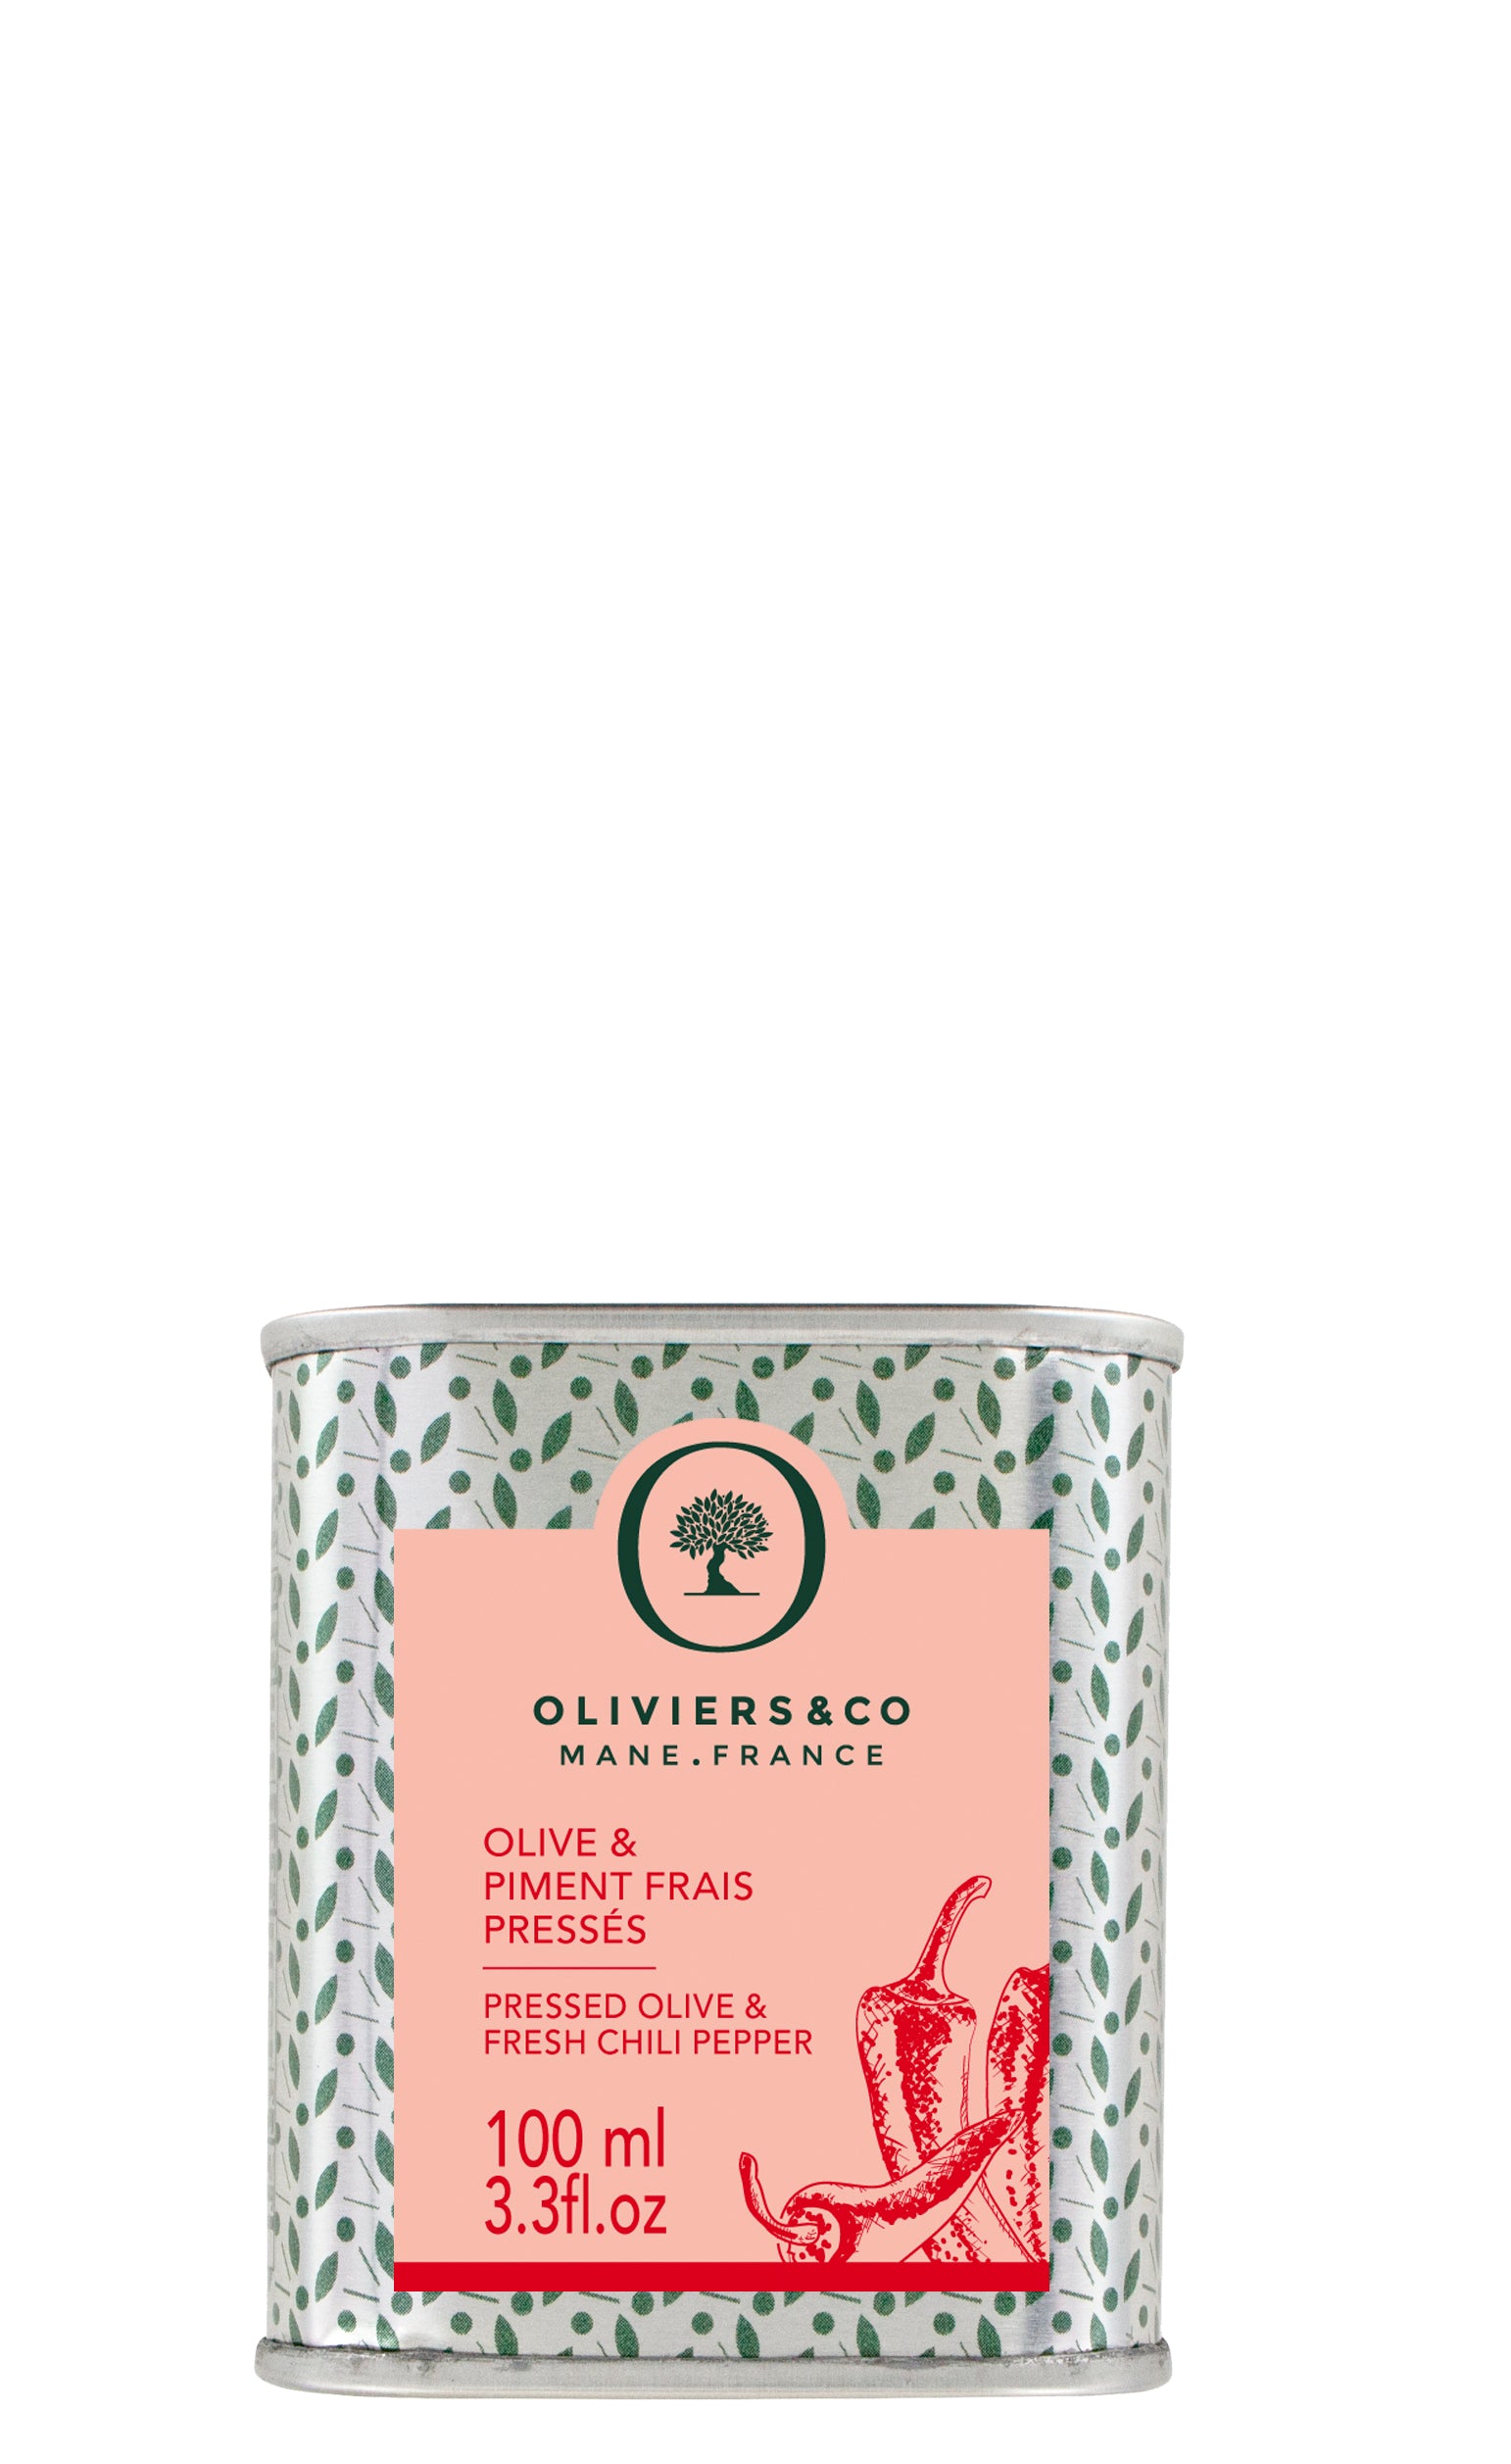 Olivenolie med Chili 100 ml fra Oliviers & Co